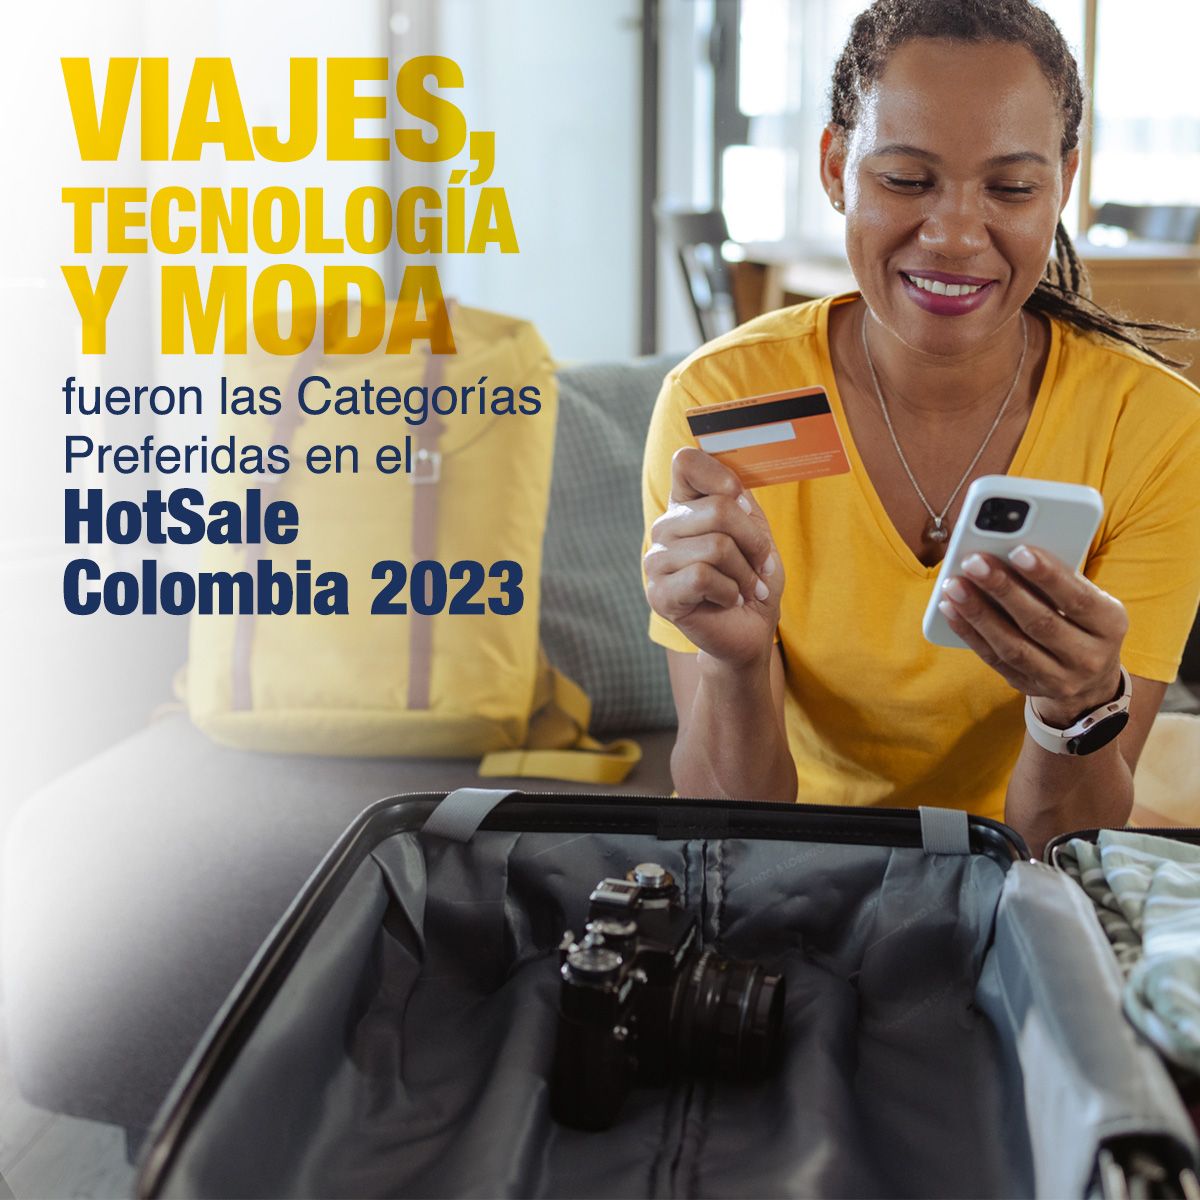 Viajes, Tecnología y Moda fueron las Categorías Preferidas en el HotSale Colombia 2023